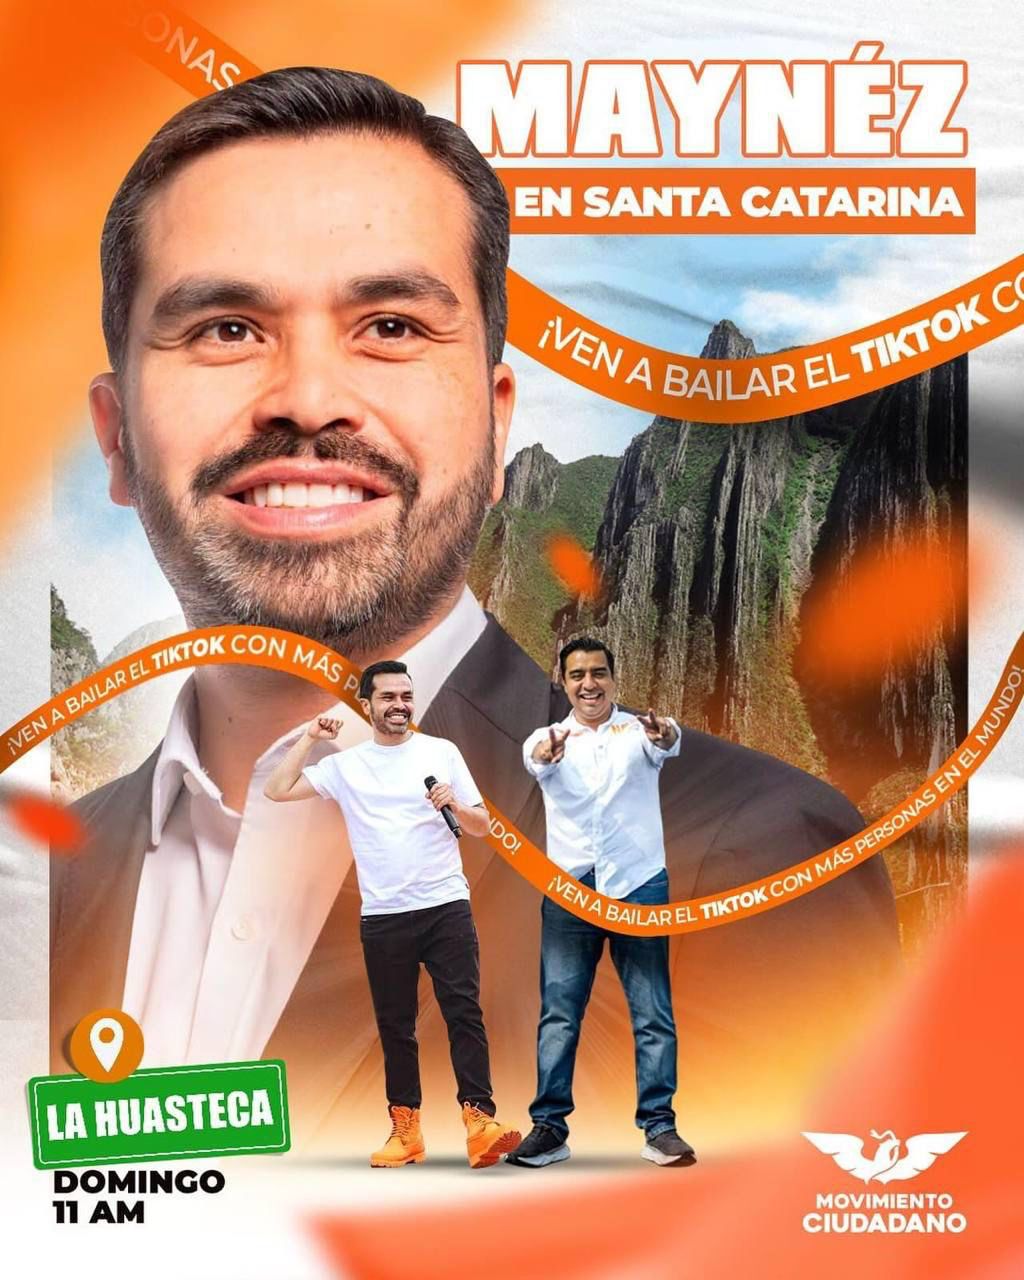 Harán Máynez y Candidatos de Nuevo León campaña en Santa Catarina